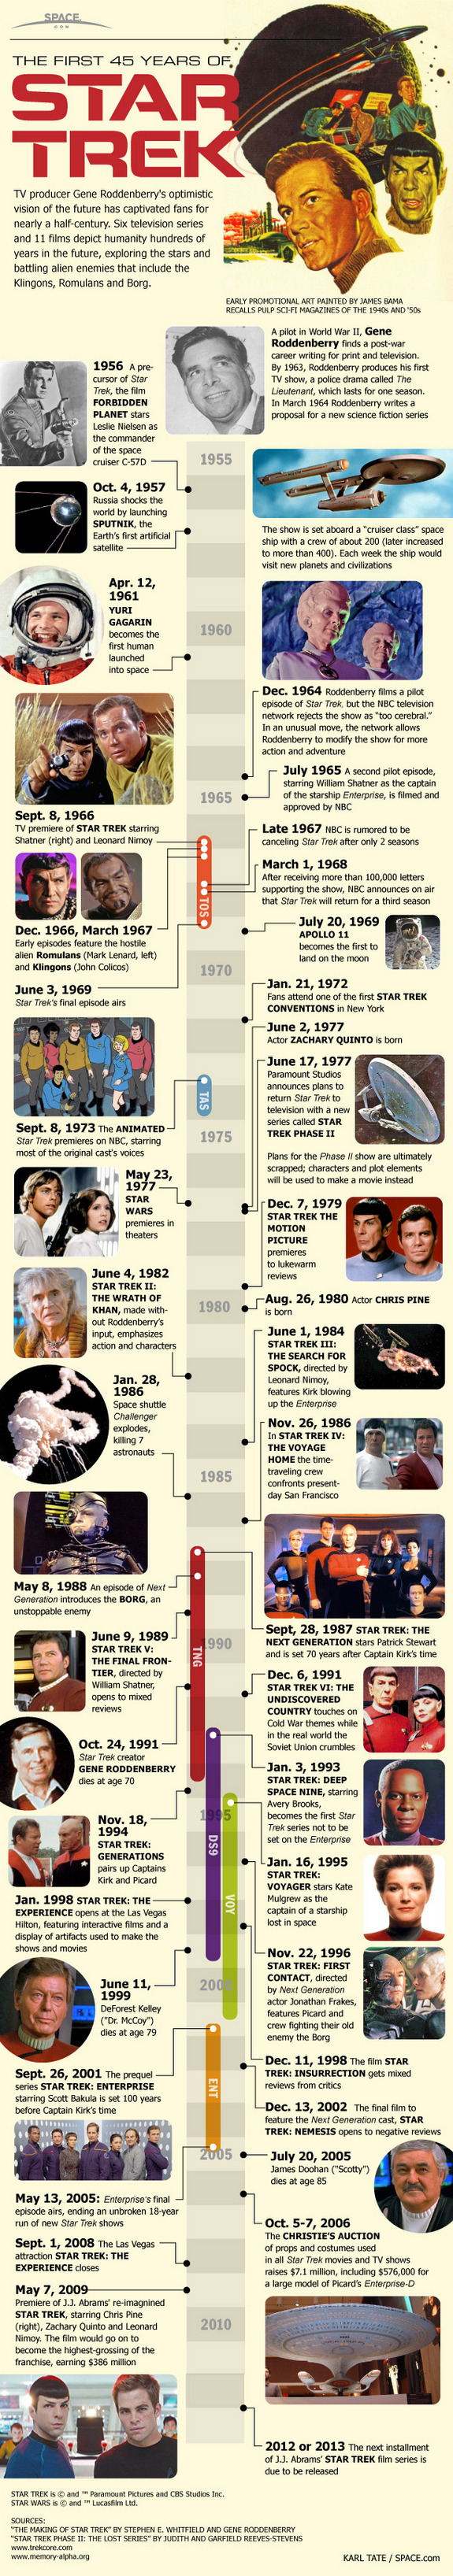 Star Trek Infographic